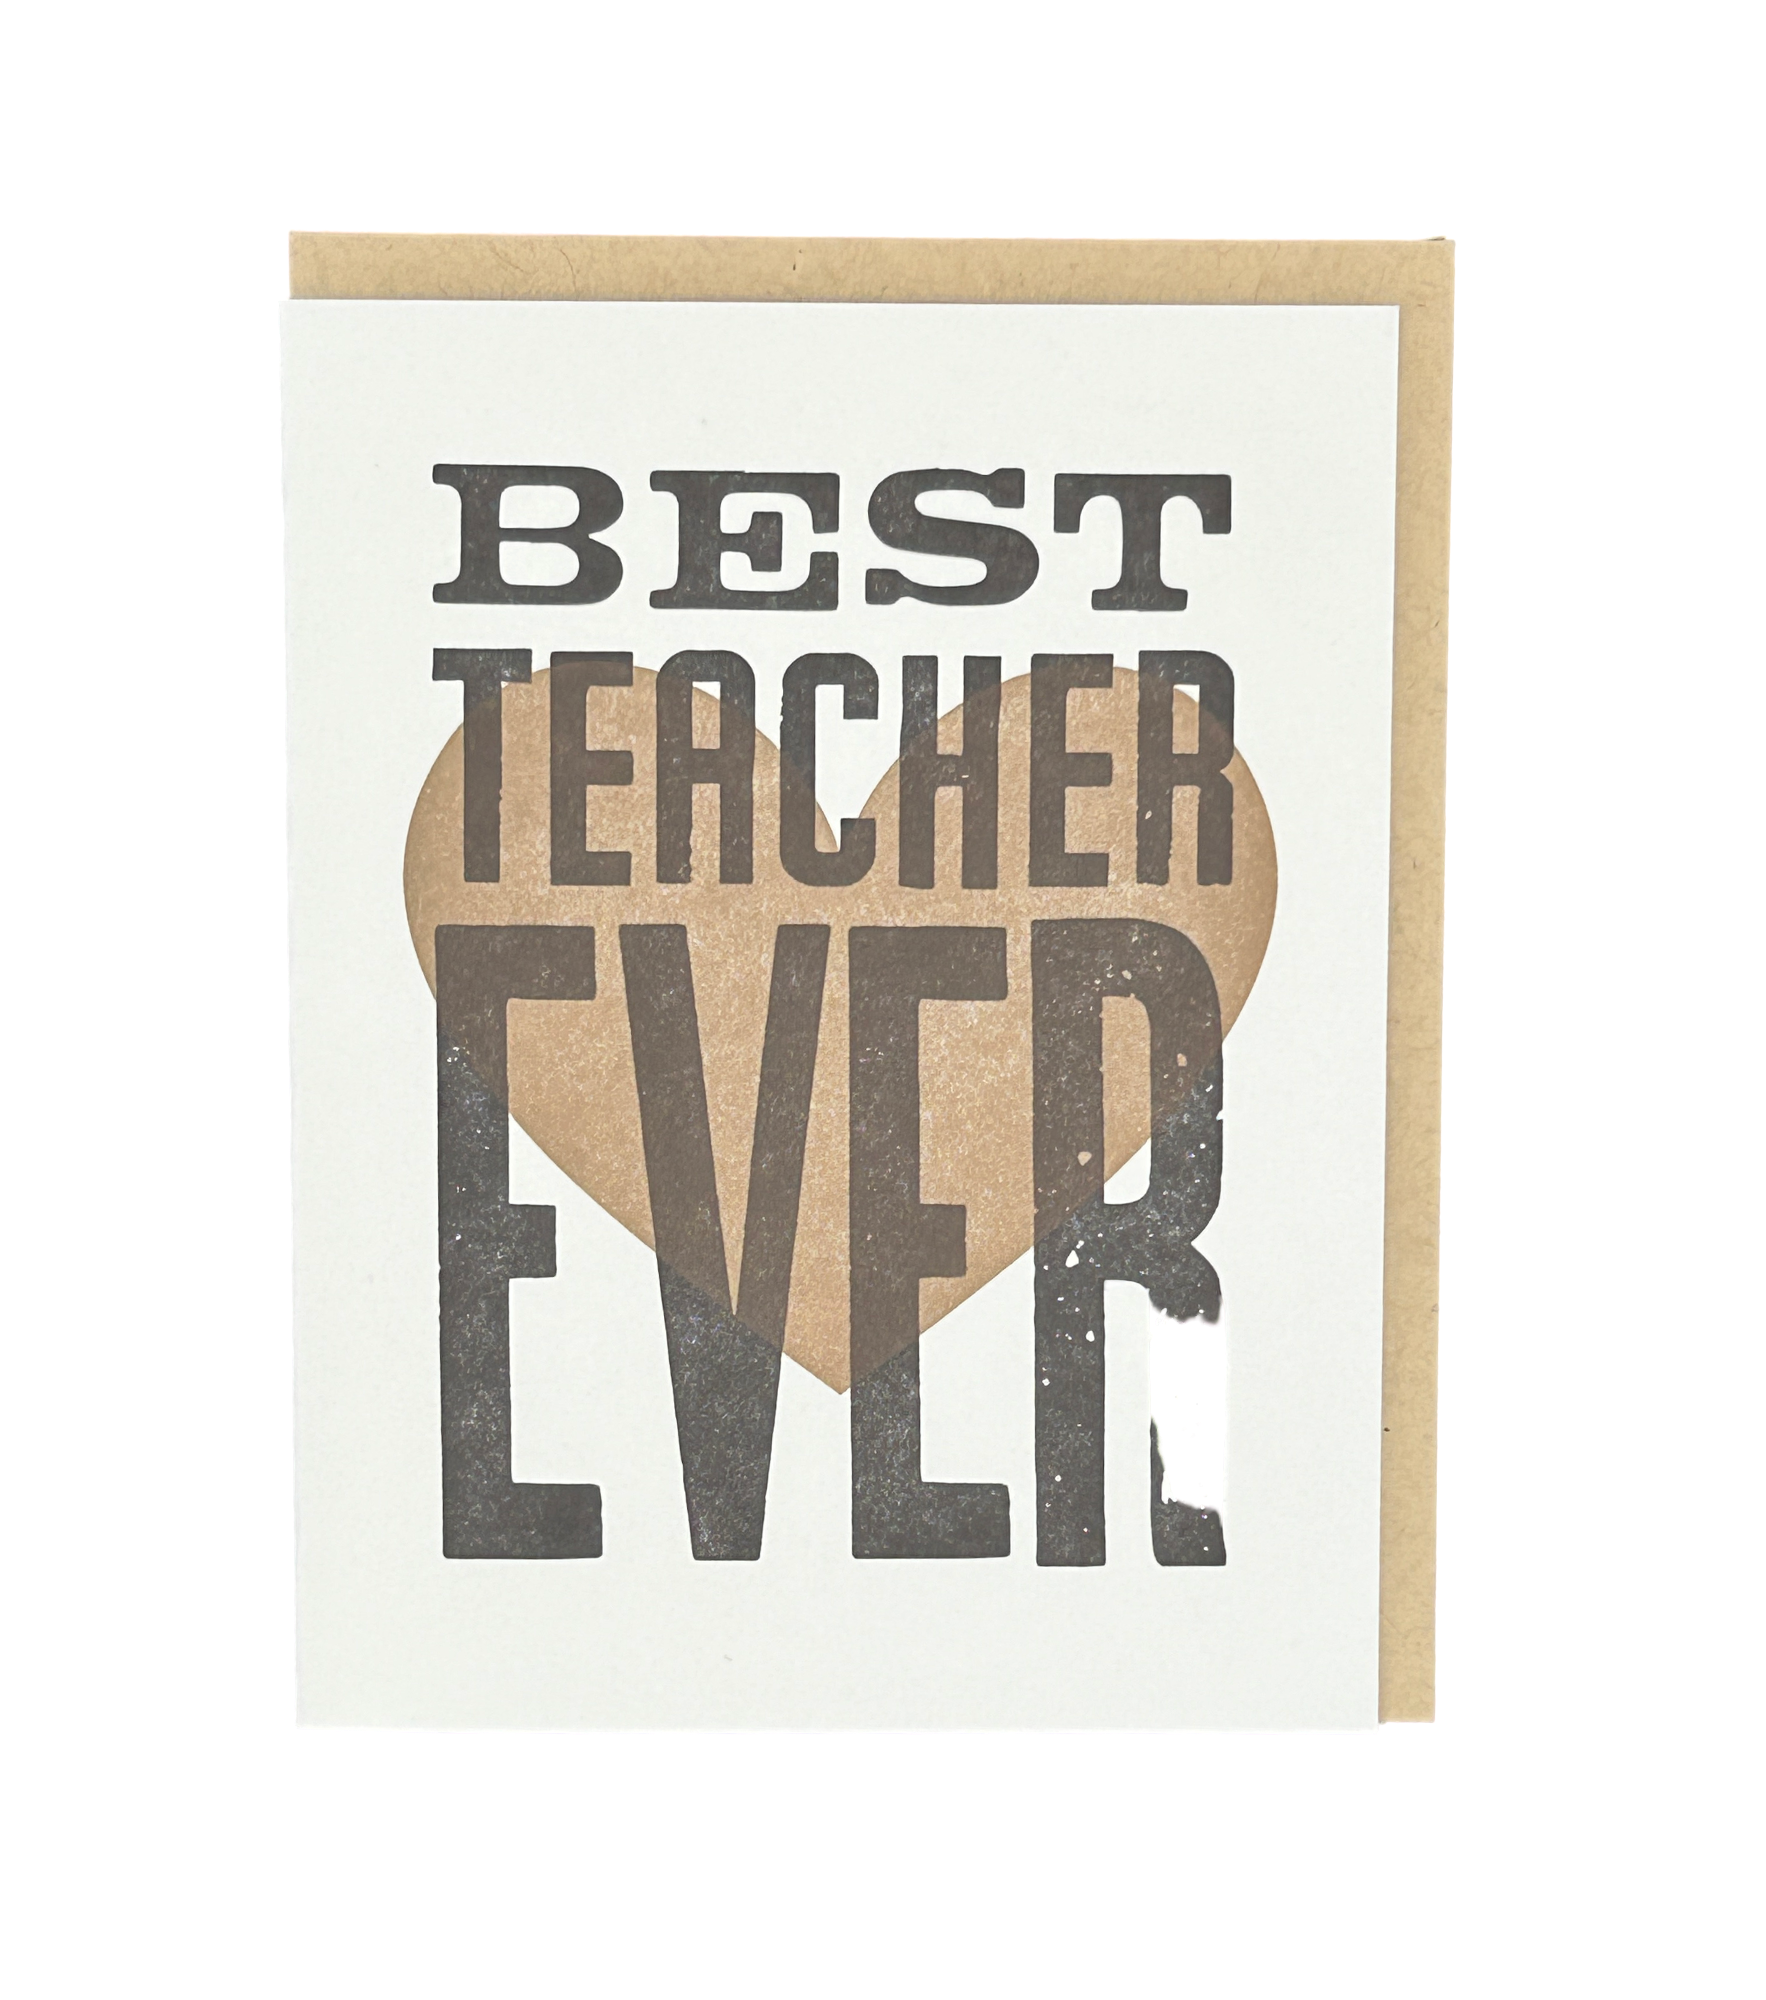 Best Teacher Ever Letterpress Card